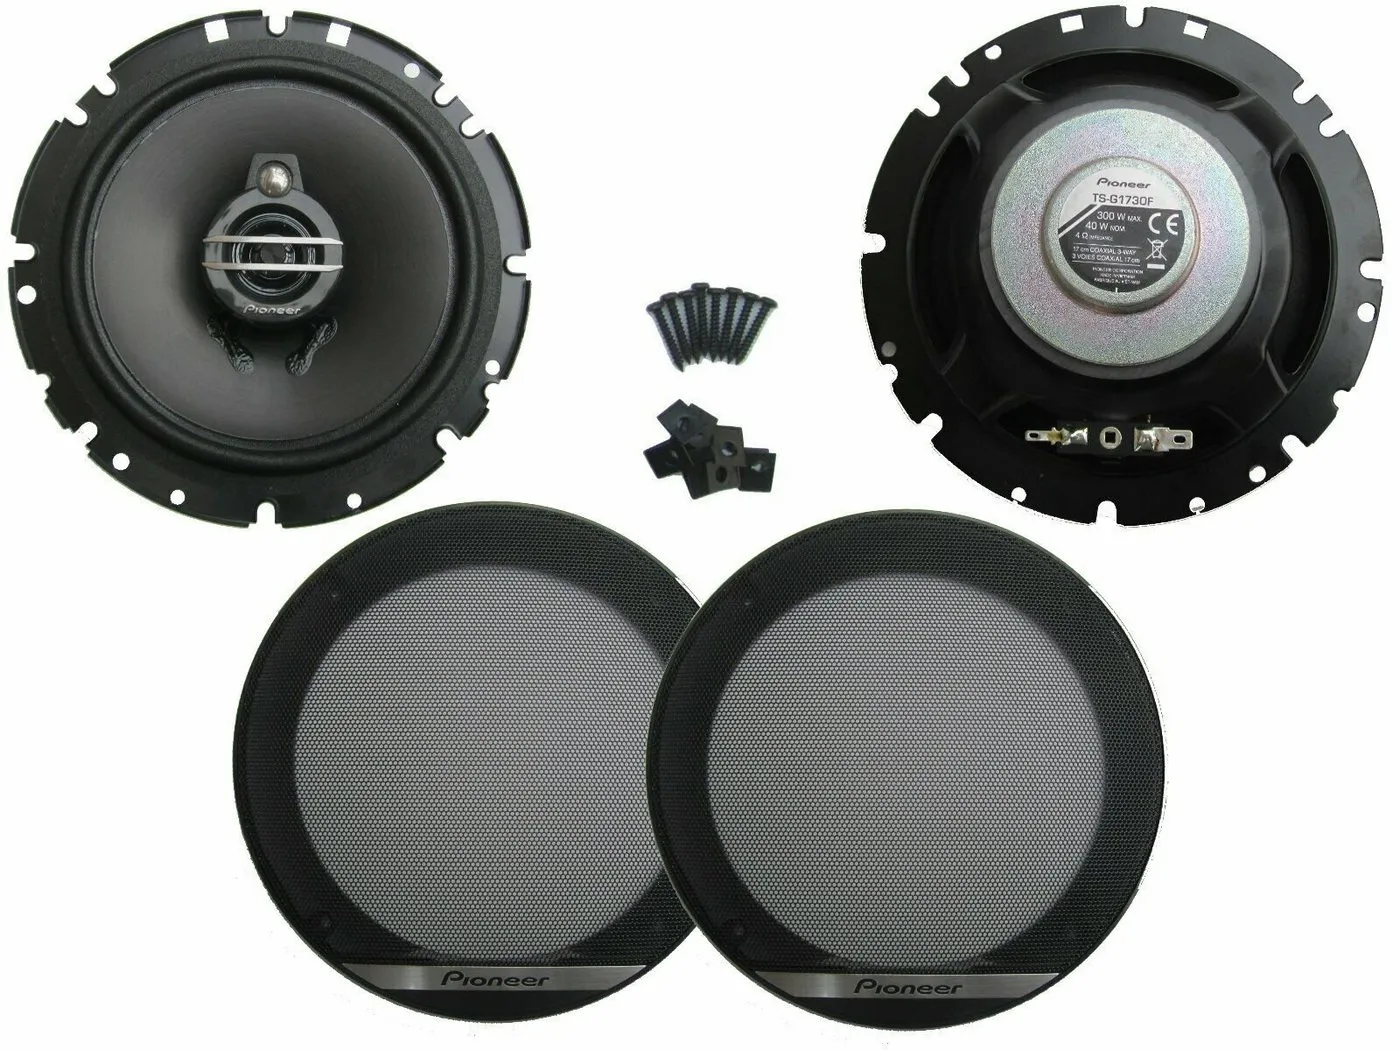 DSX Pioneer passend für BMW 3er E46 98-07 Lautsprecher Set Tür Vorn Hinten 600 W Auto-Lautsprecher